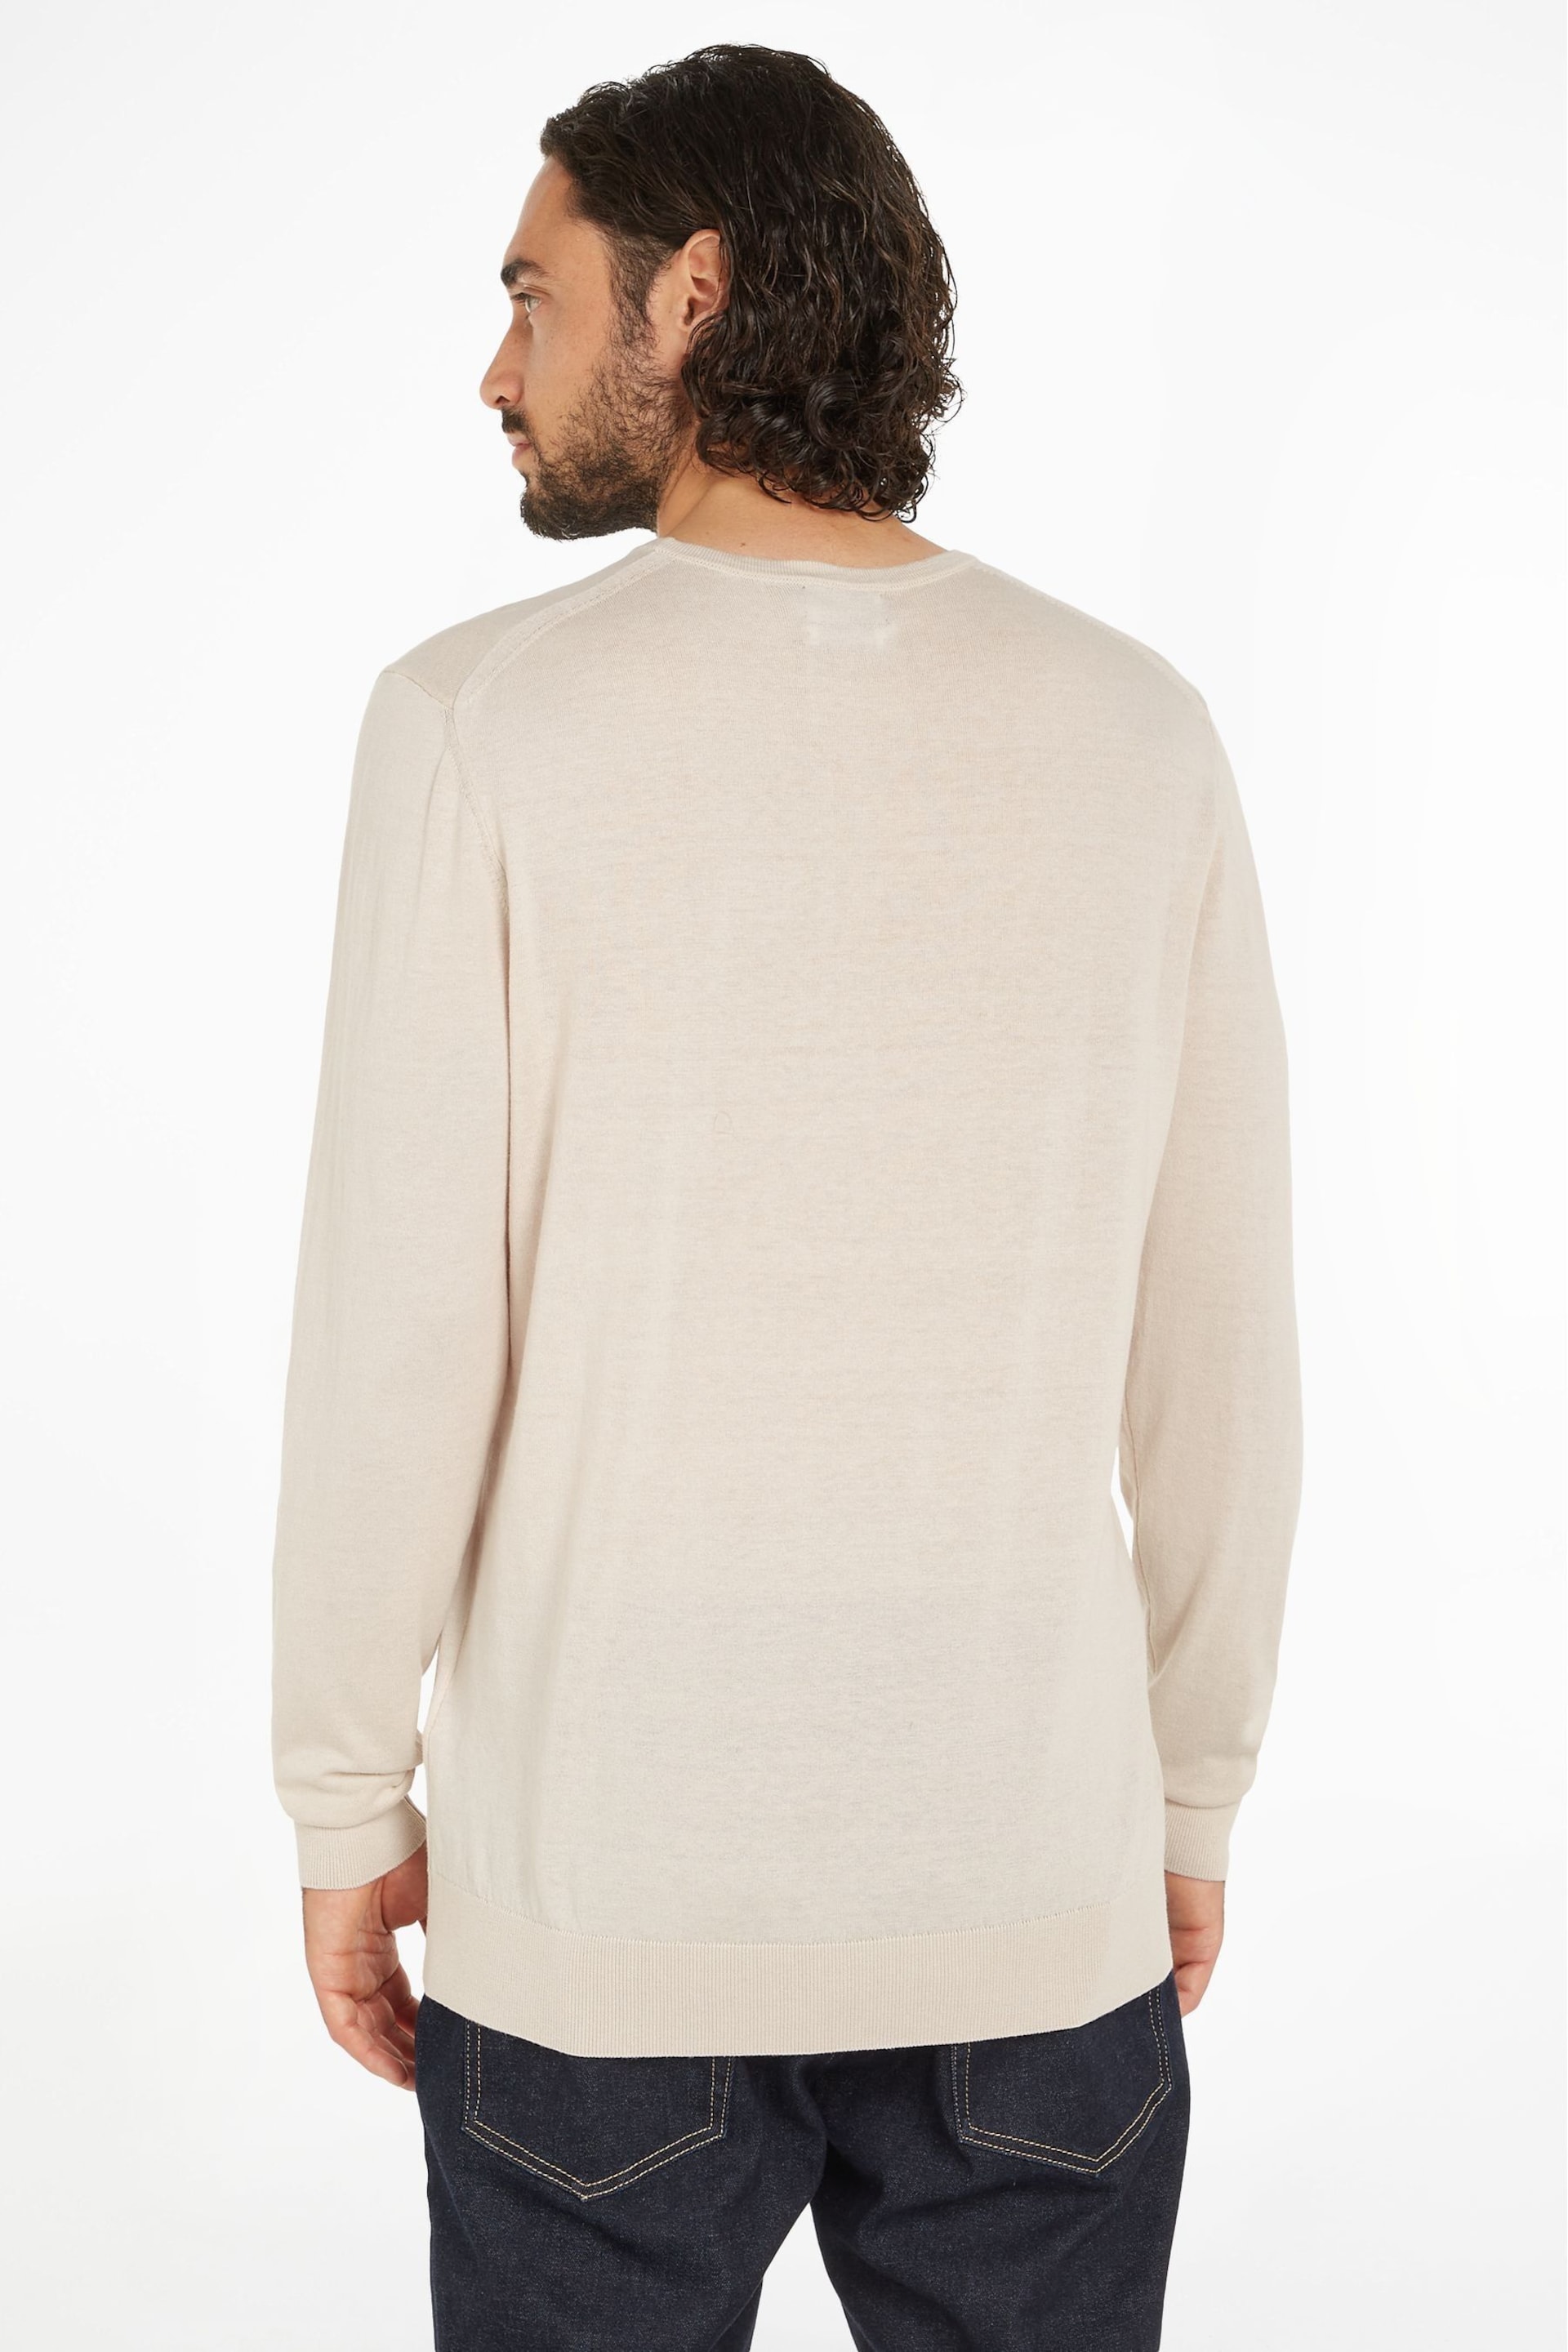 Calvin Klein Natural Logo Sweater - Image 2 of 6